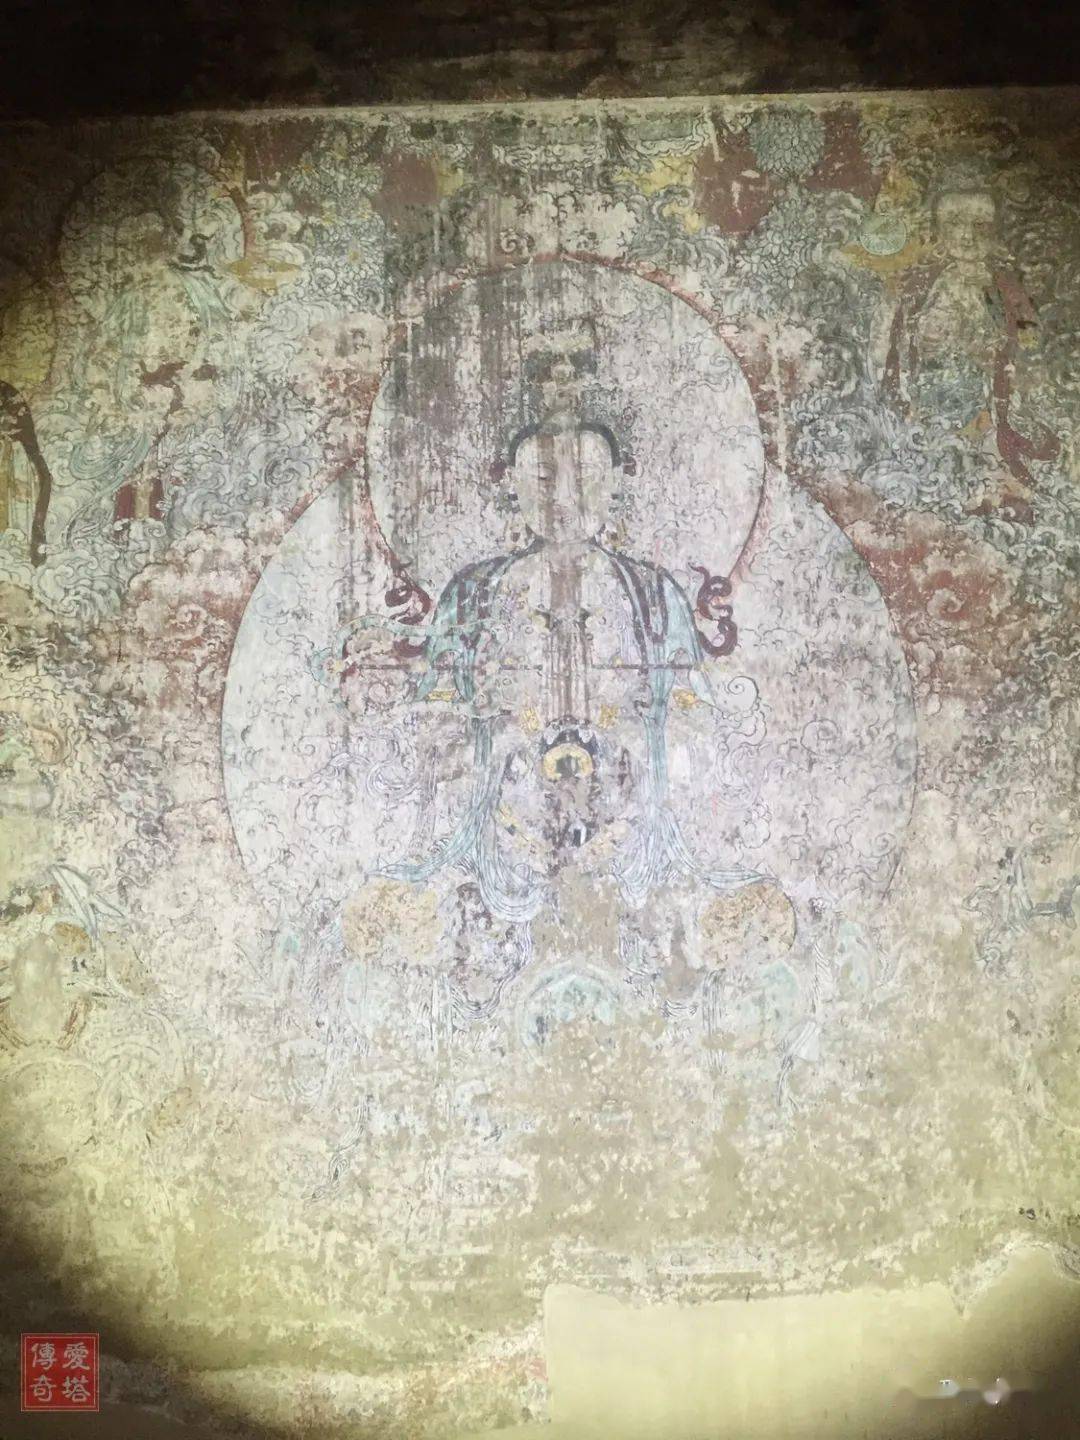 十二圆觉菩萨,在菩萨的旁侧还有弟子,护法,供养人等 龙居寺壁画的色彩